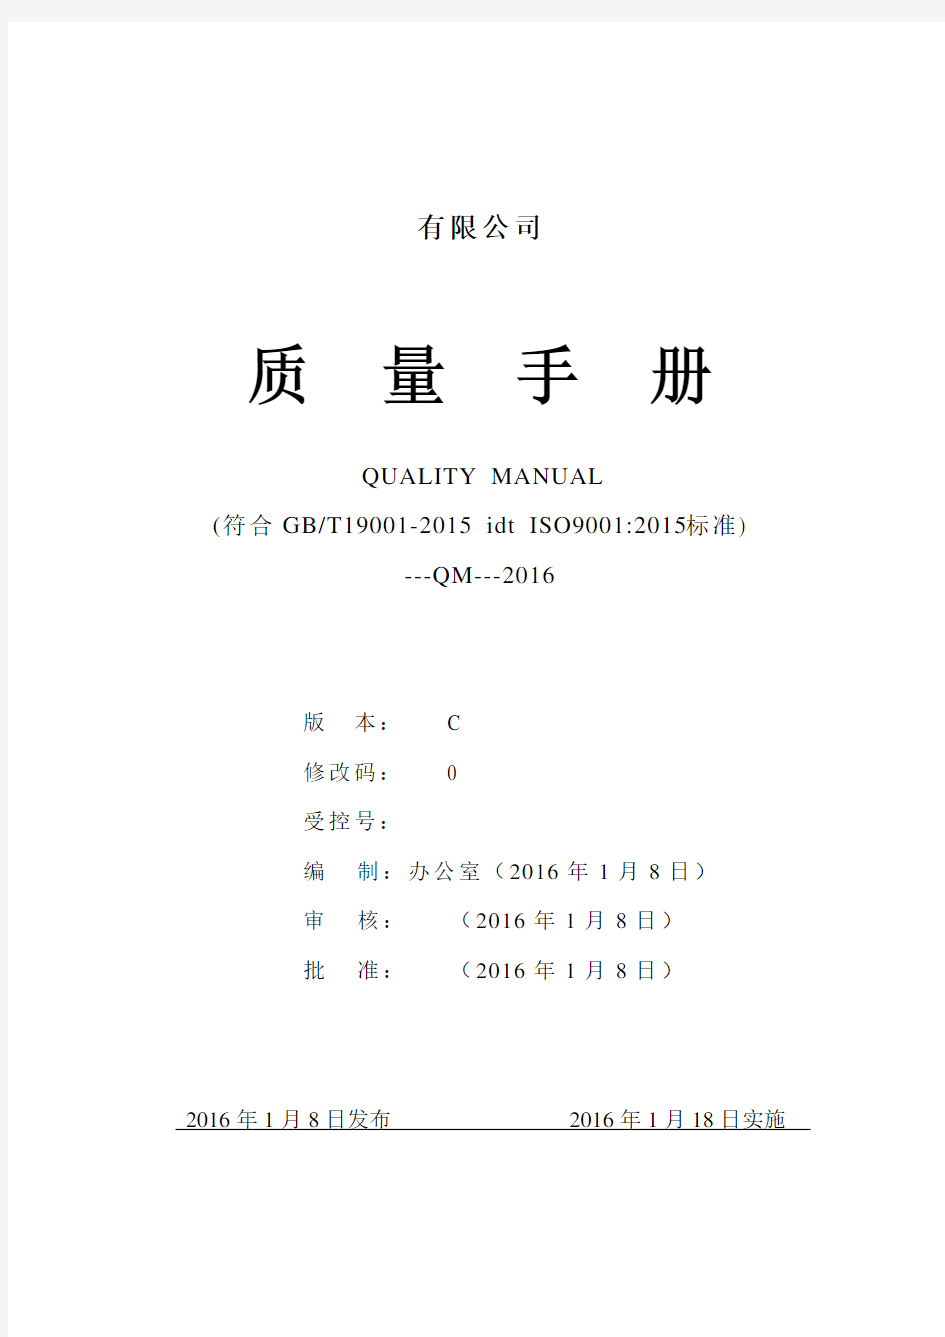 2015版 质量手册(ISO9001-2015)